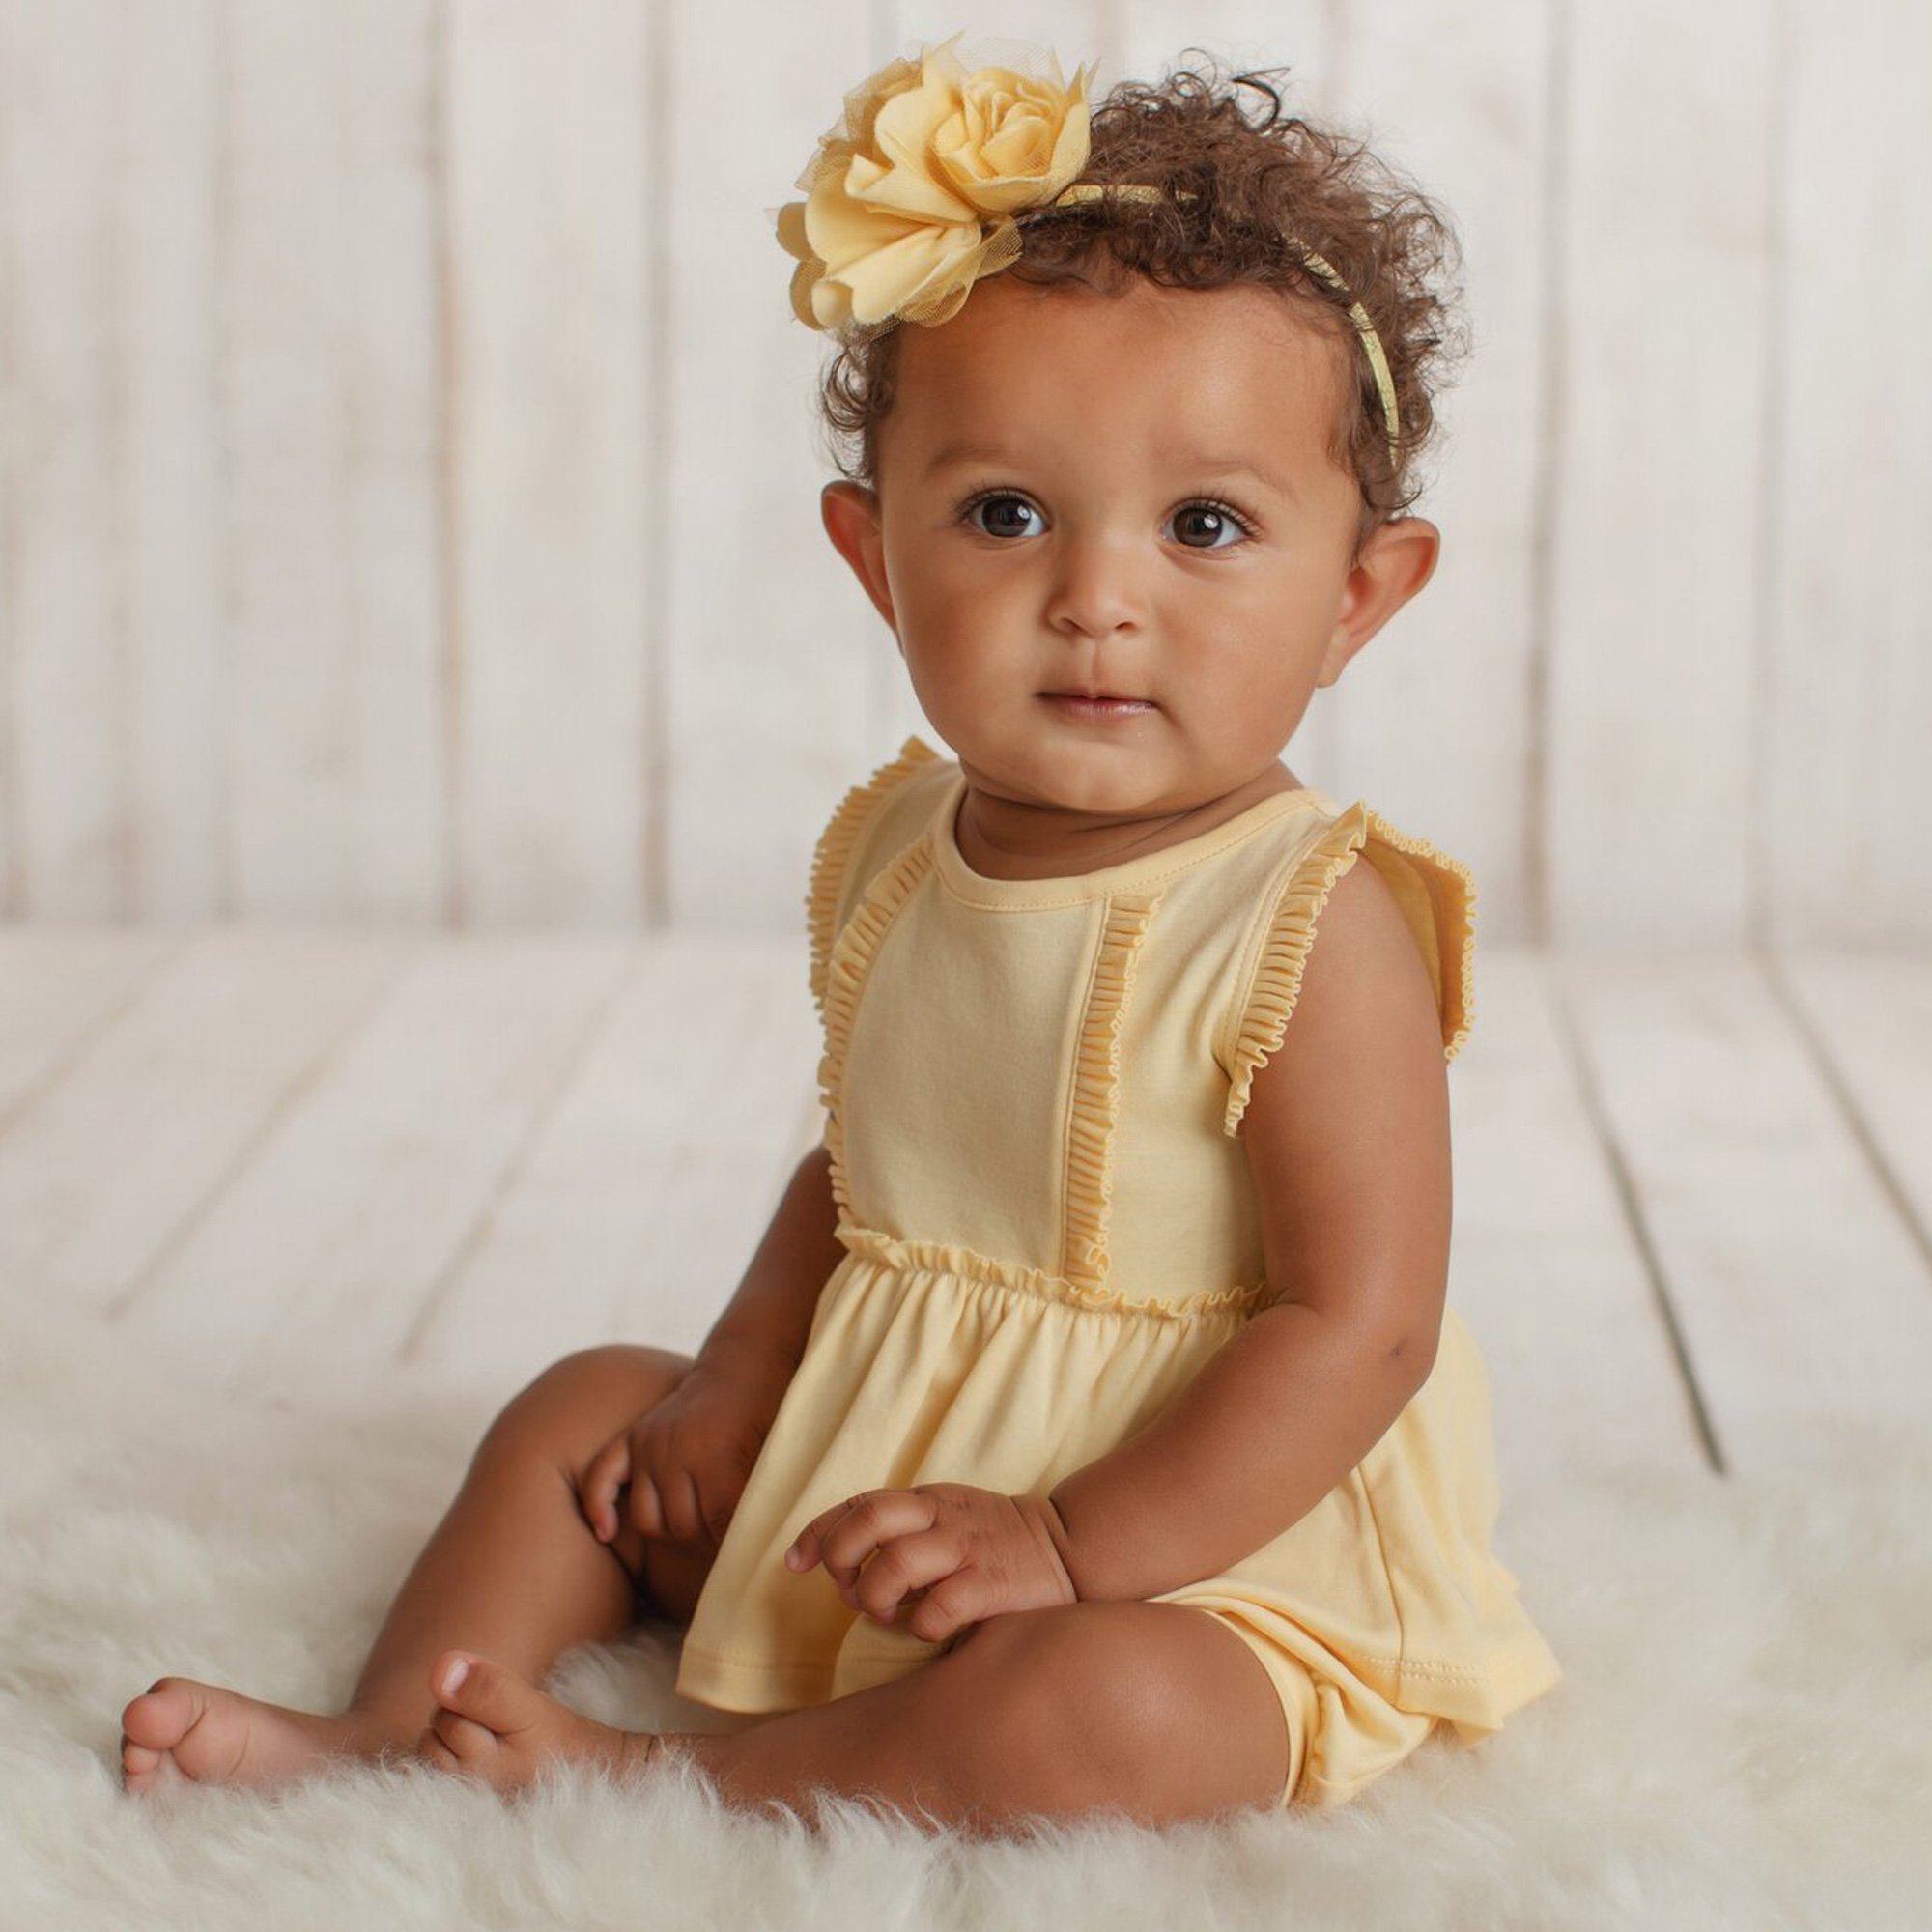 Bright Yellow Soft Cotton Dresses | Baby Girls Frock Pattern Ideas | The  Nesavu – The Nesavu